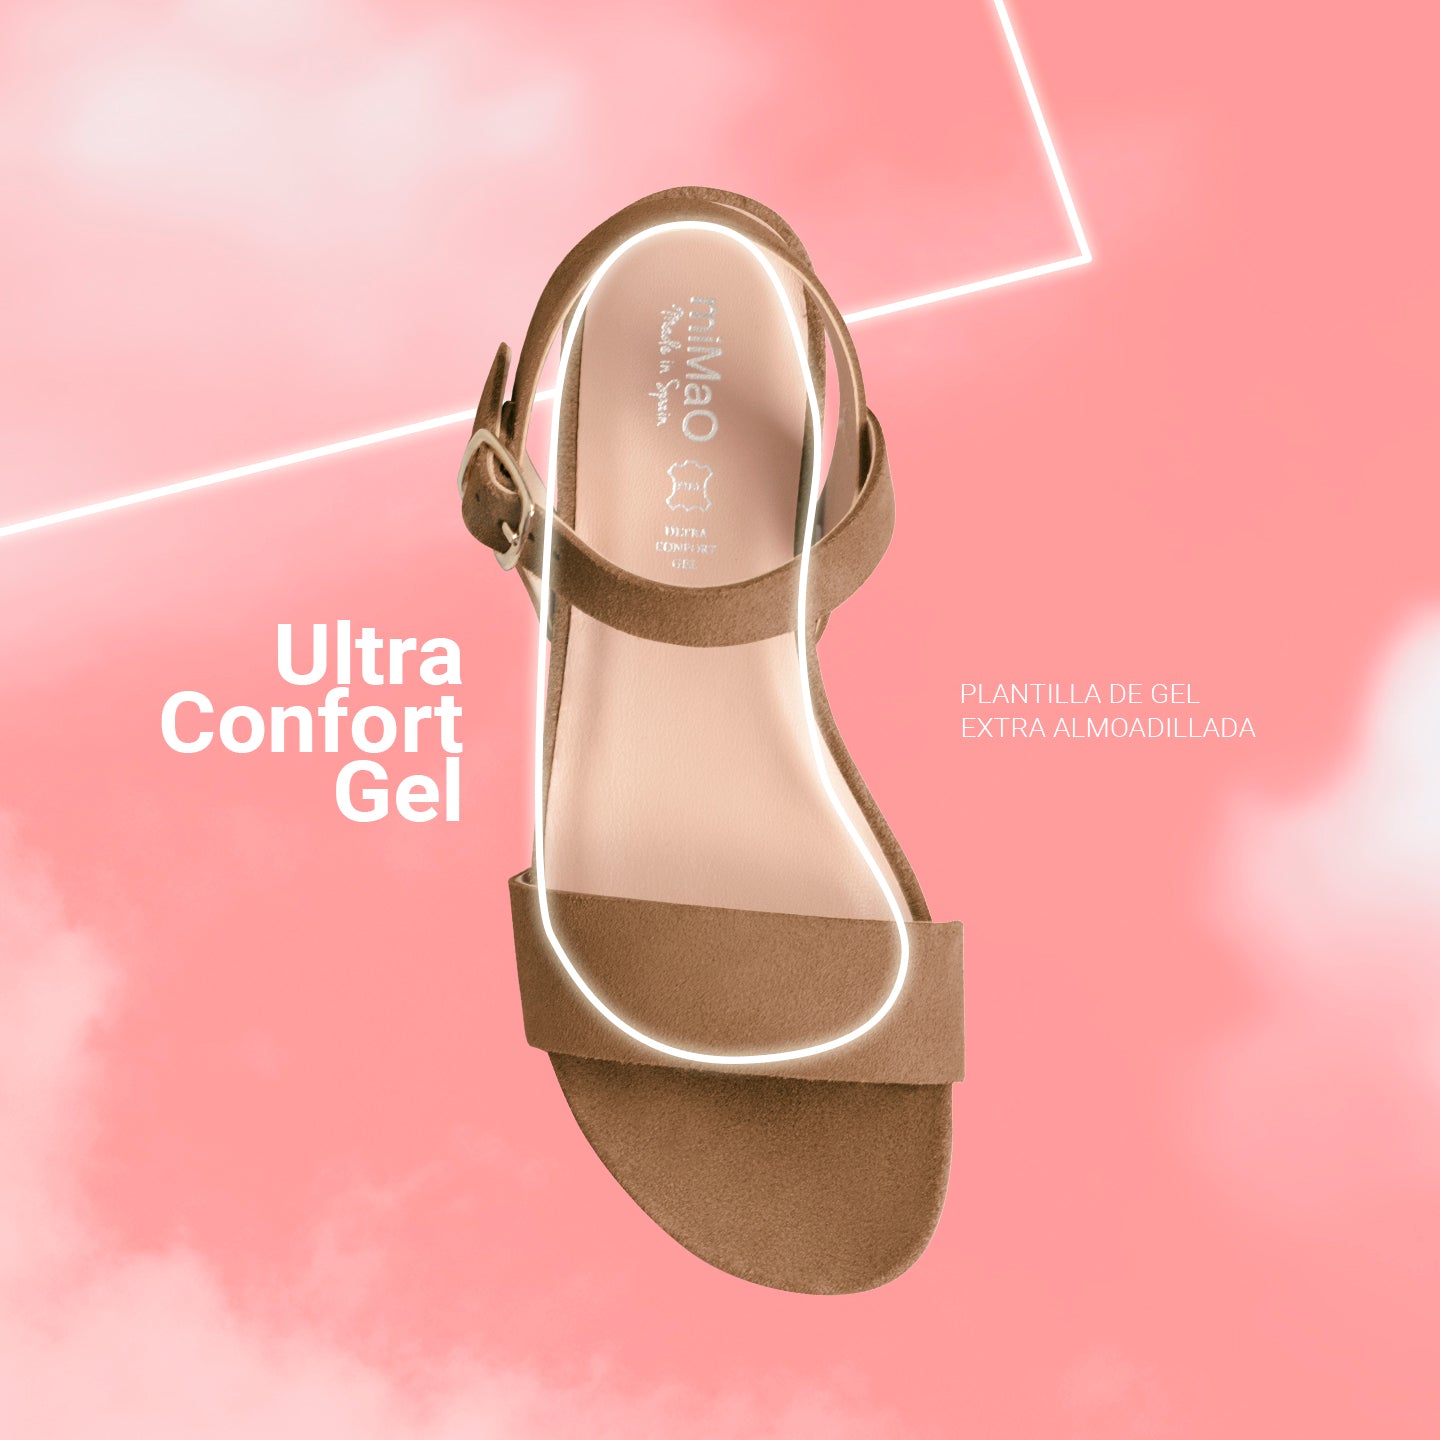 LOOK – BEIGE flat sandals